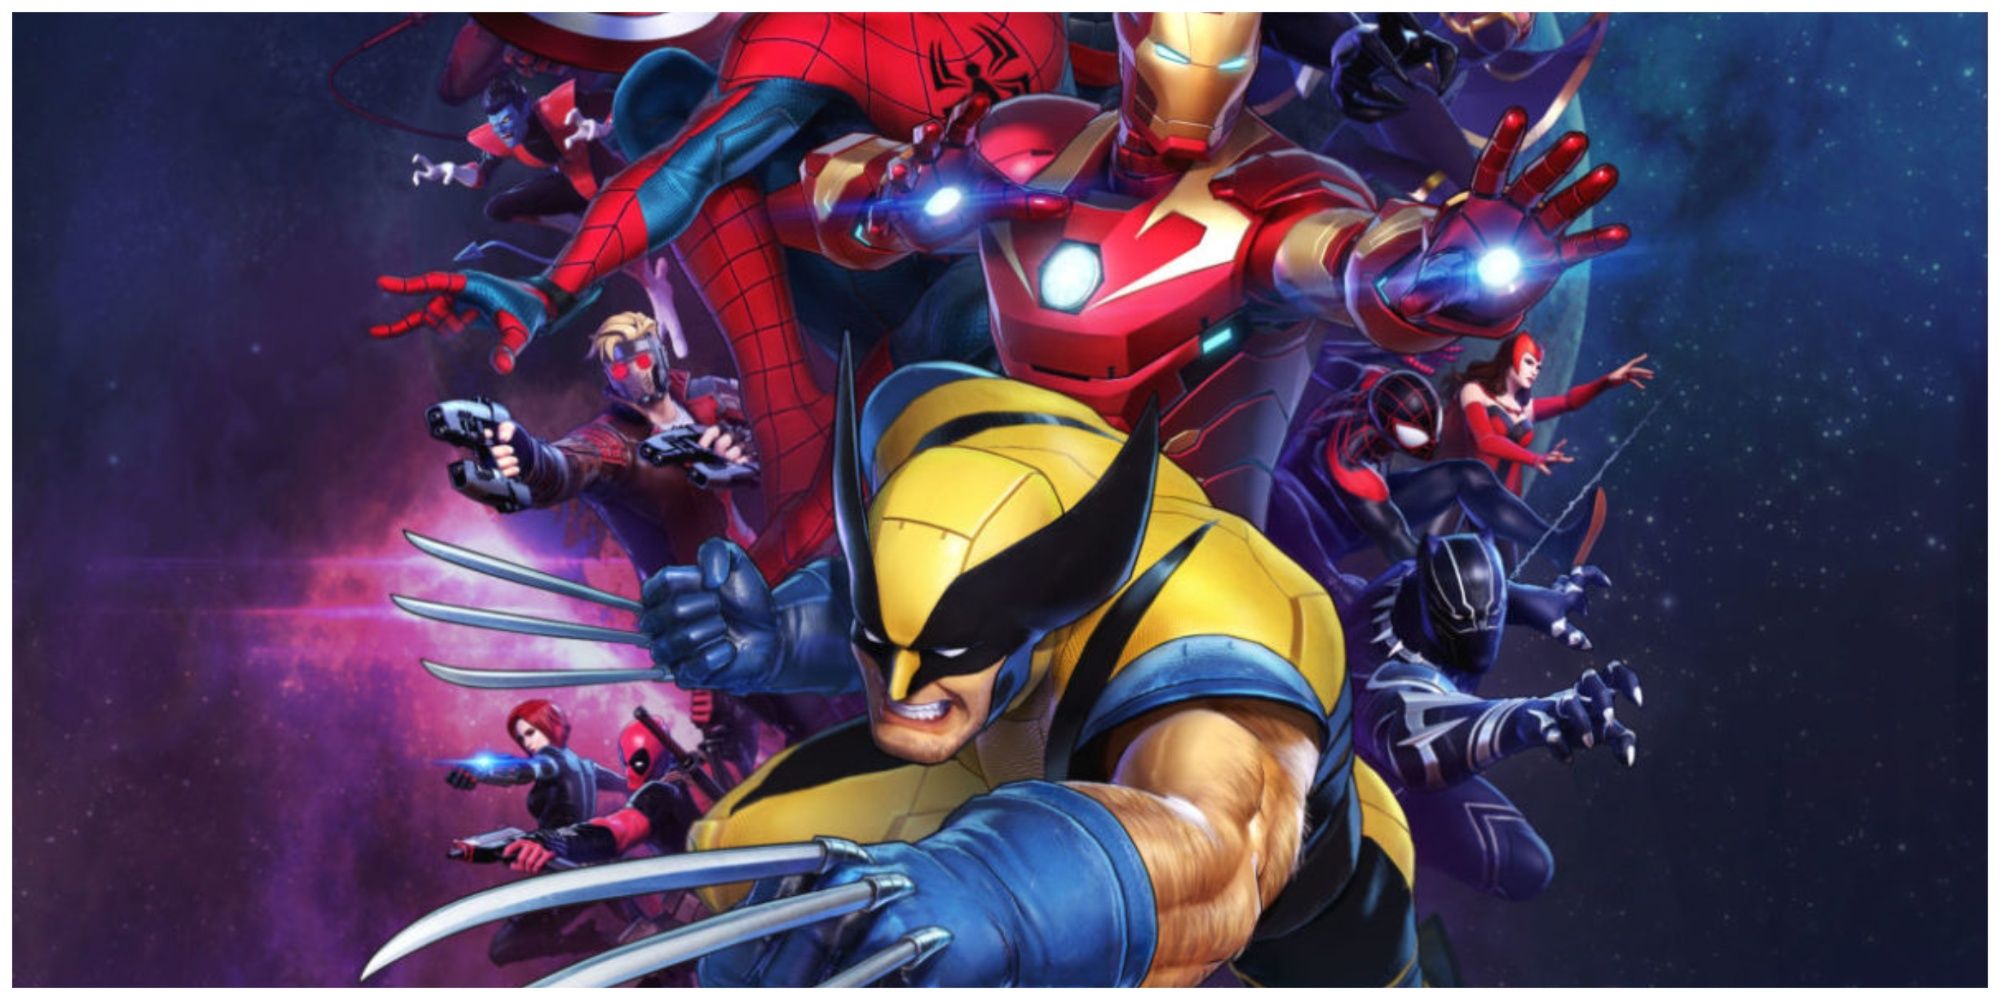 Marvel Ultimate Alliance 3 Cover Art